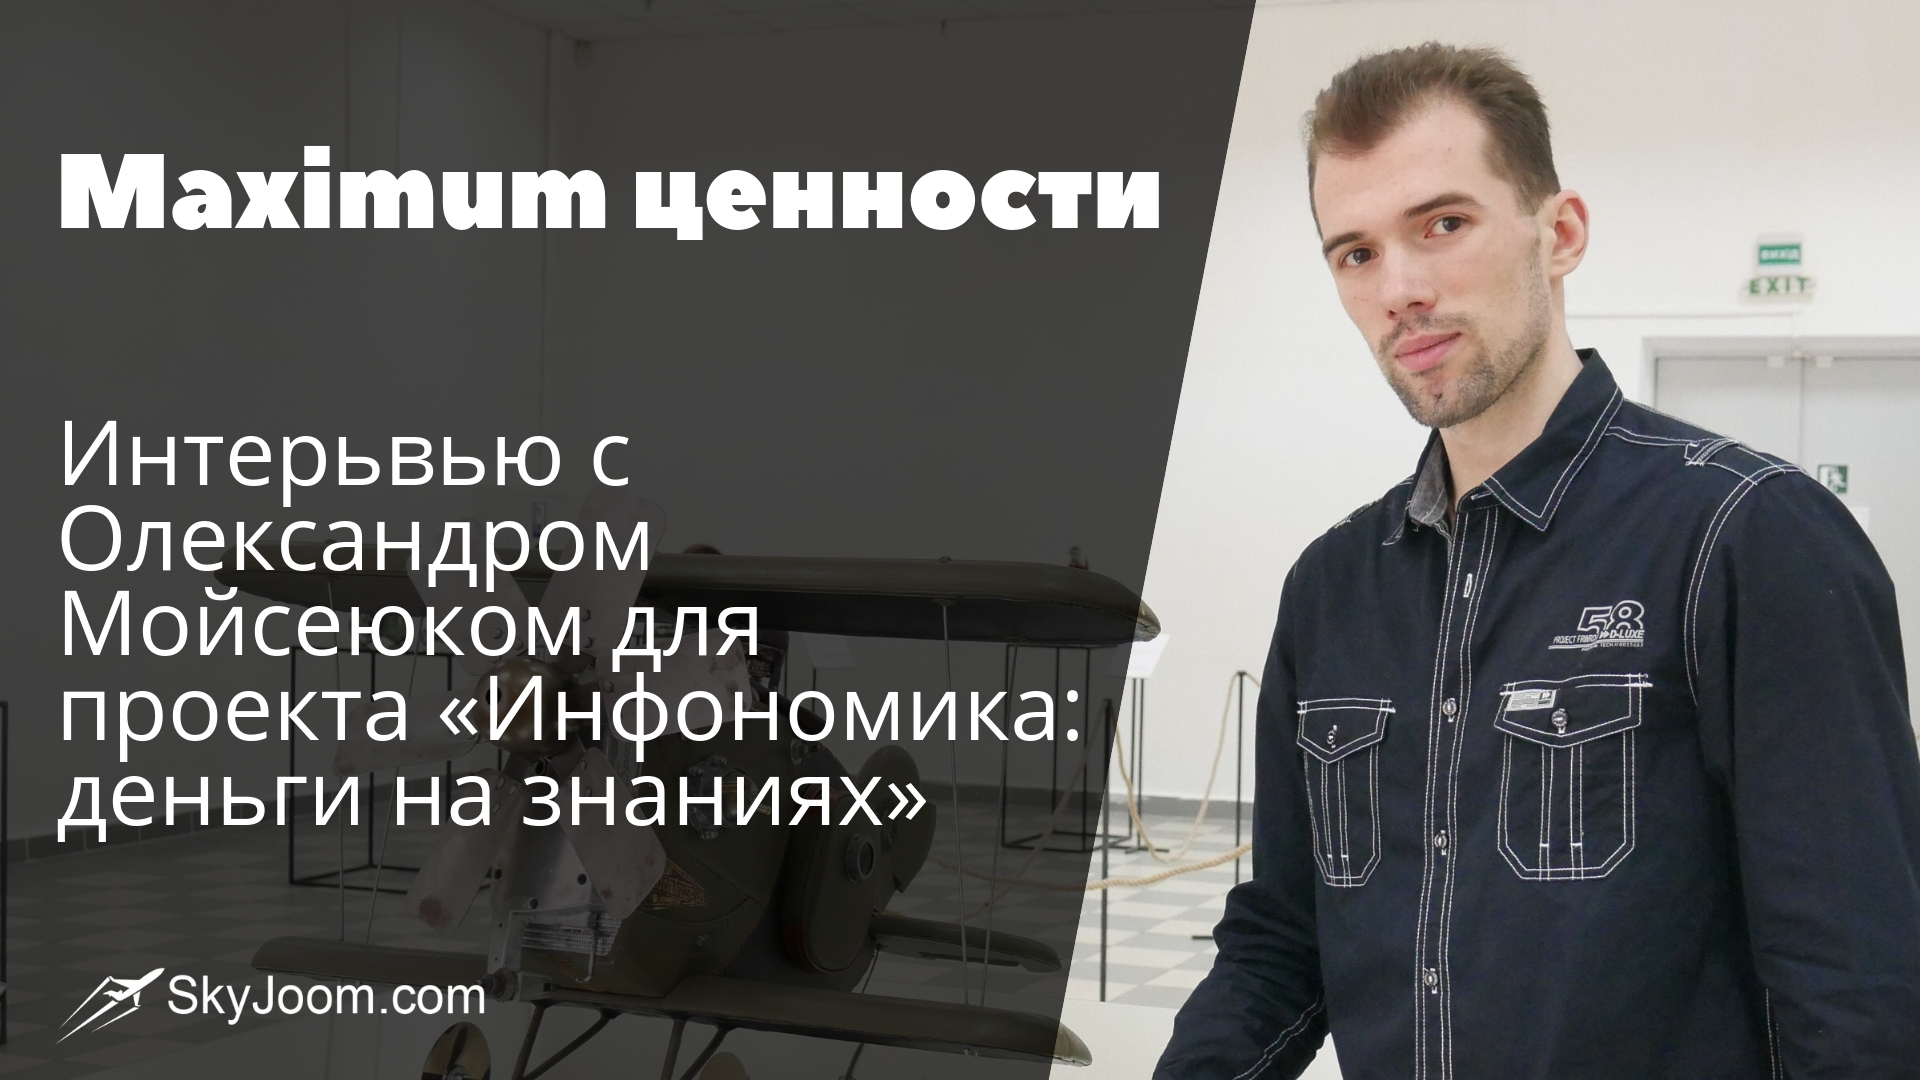 Maximum ценности  - Интерьвью с Олександром Мойсеюком для проекта «Инфономика: деньги на знаниях»